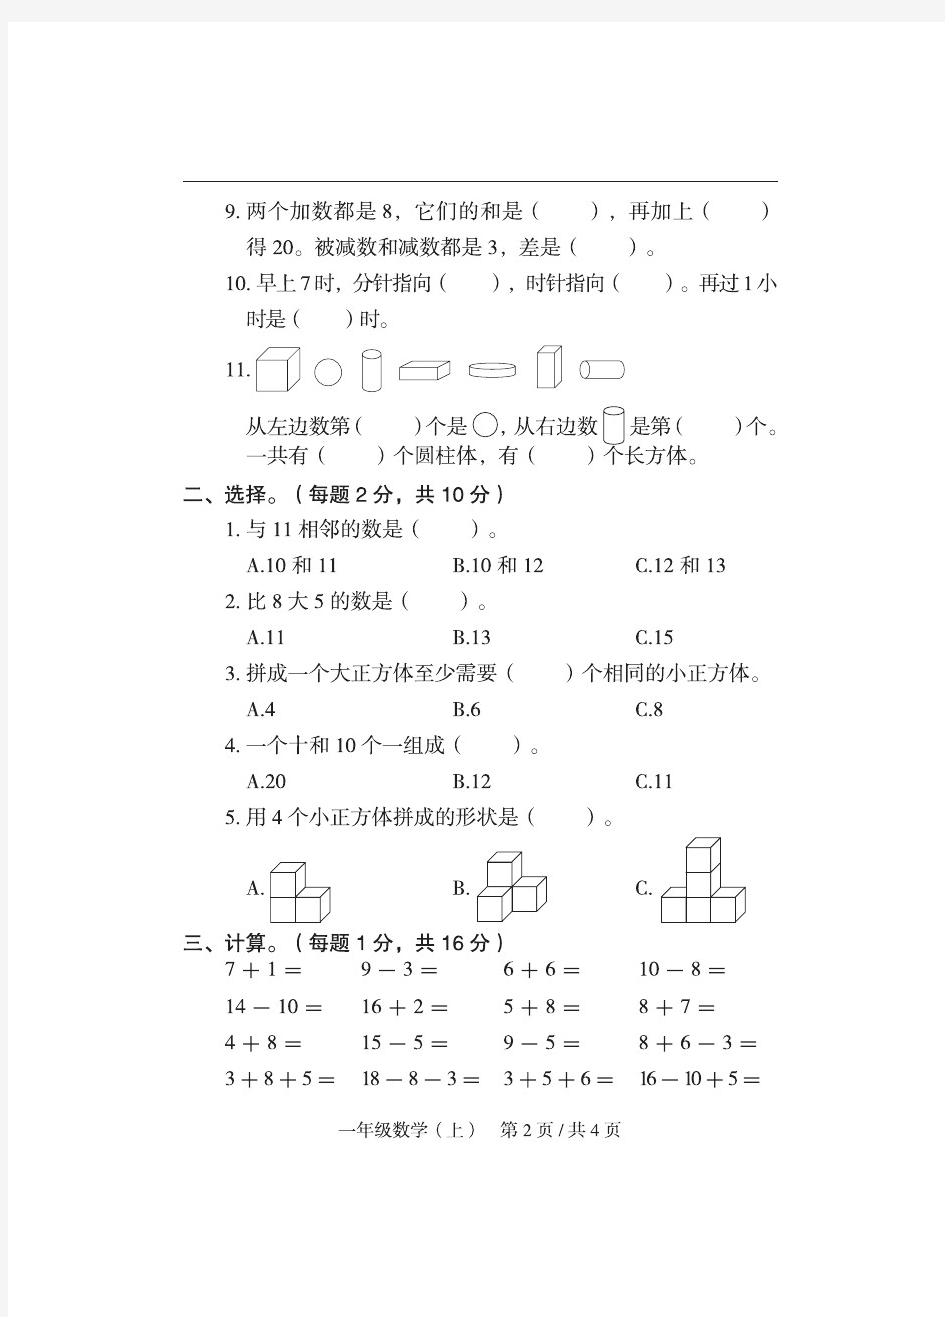 2020年人教版一年级(上册)数学期末真题卷(重庆市秀山县)